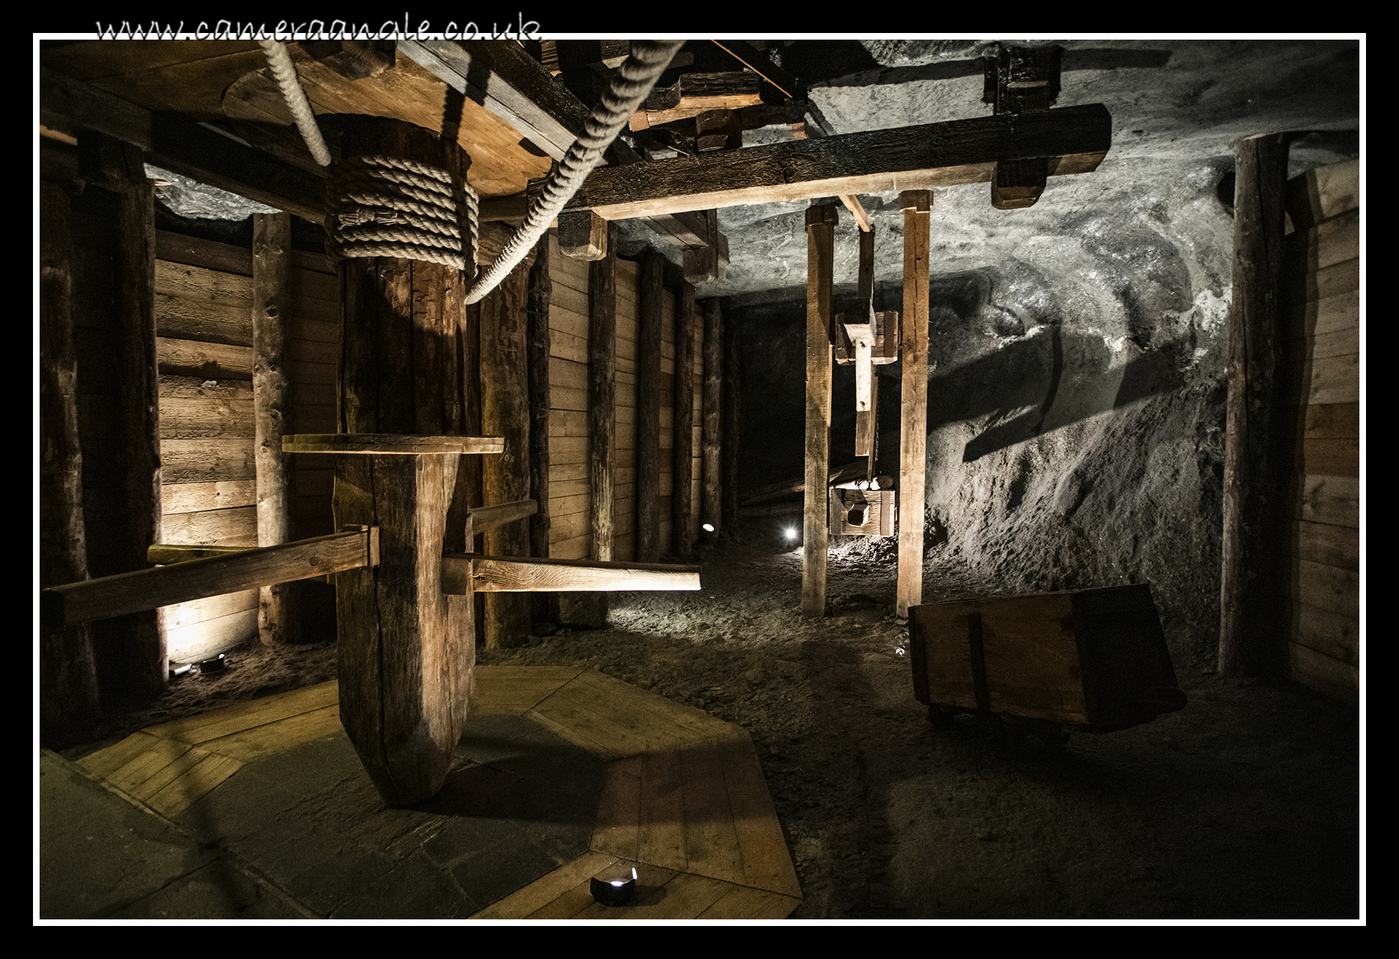 Wieliczka Salt Mine
Keywords: Wieliczka Salt Mine 2019 Krakow